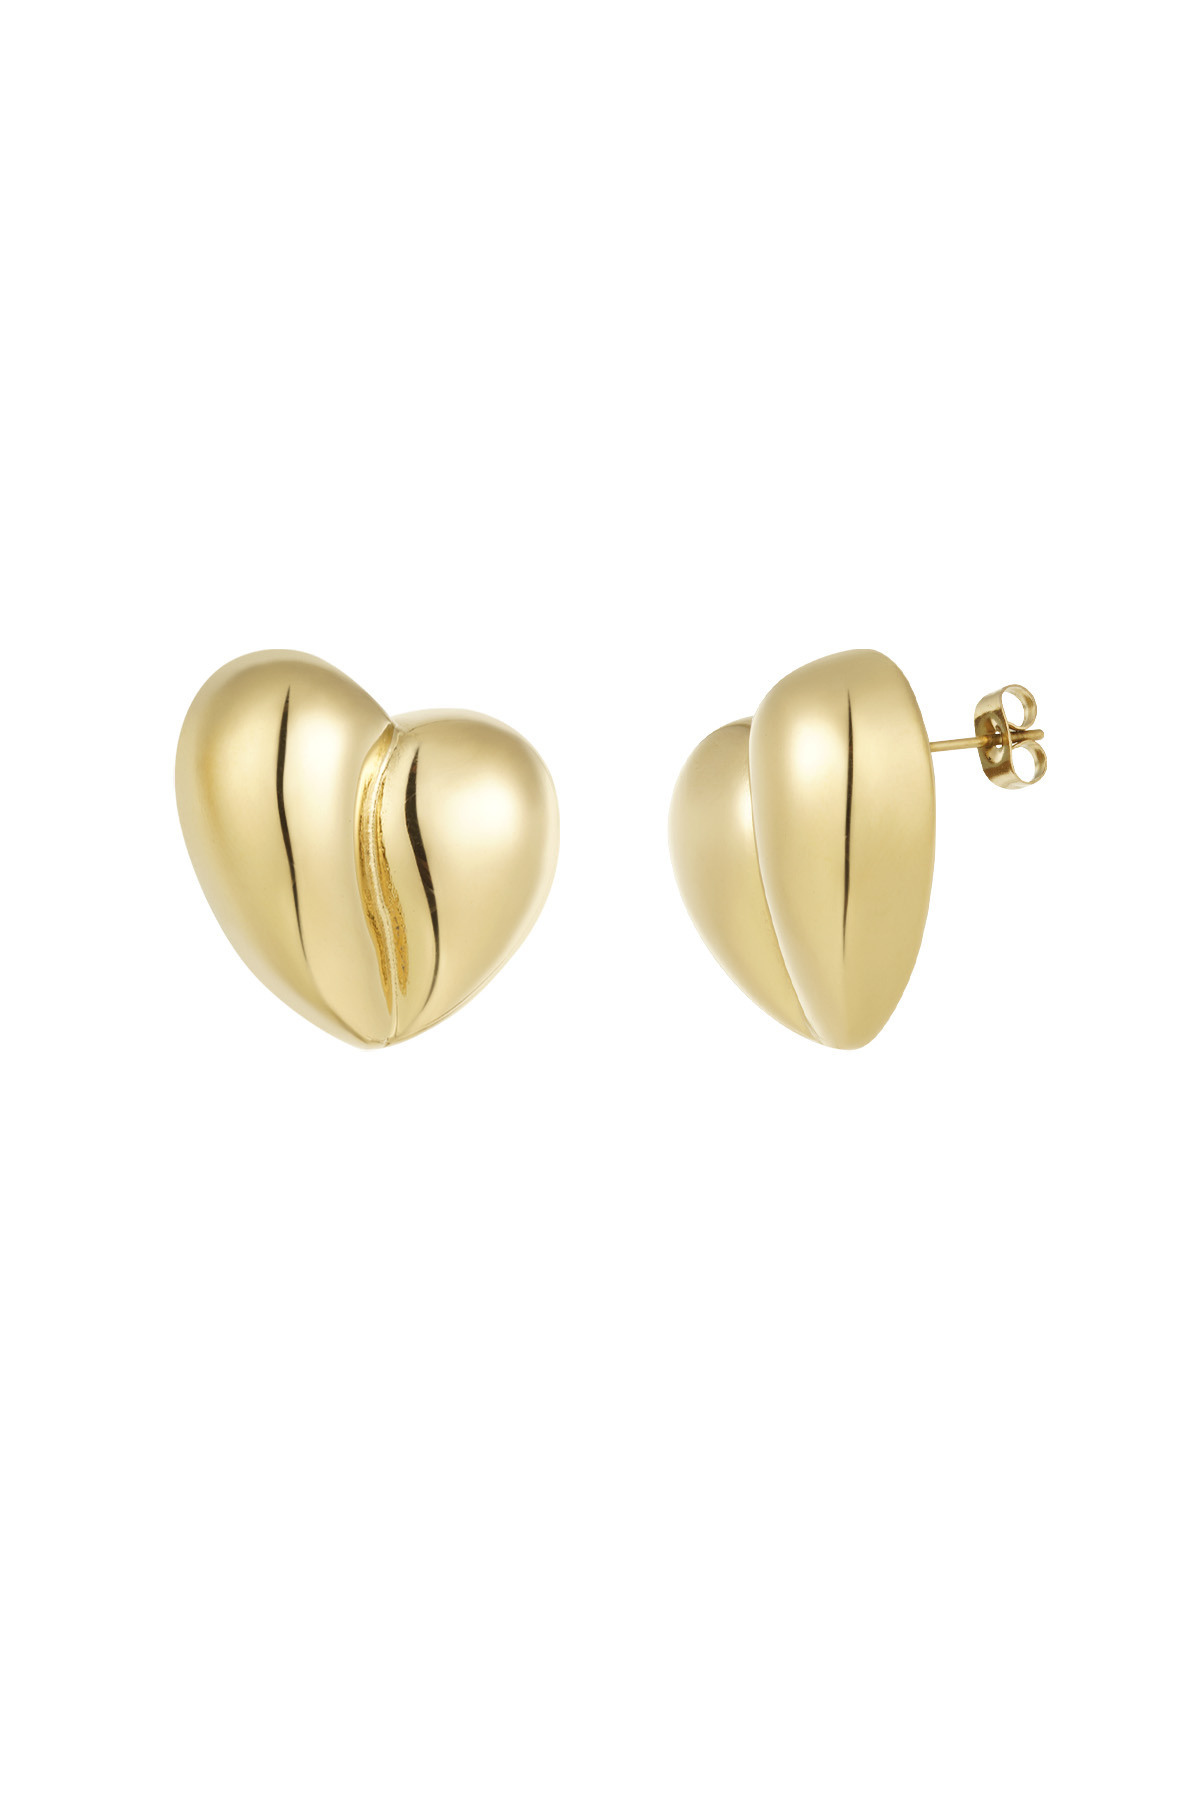 Earrings heart shape - gold